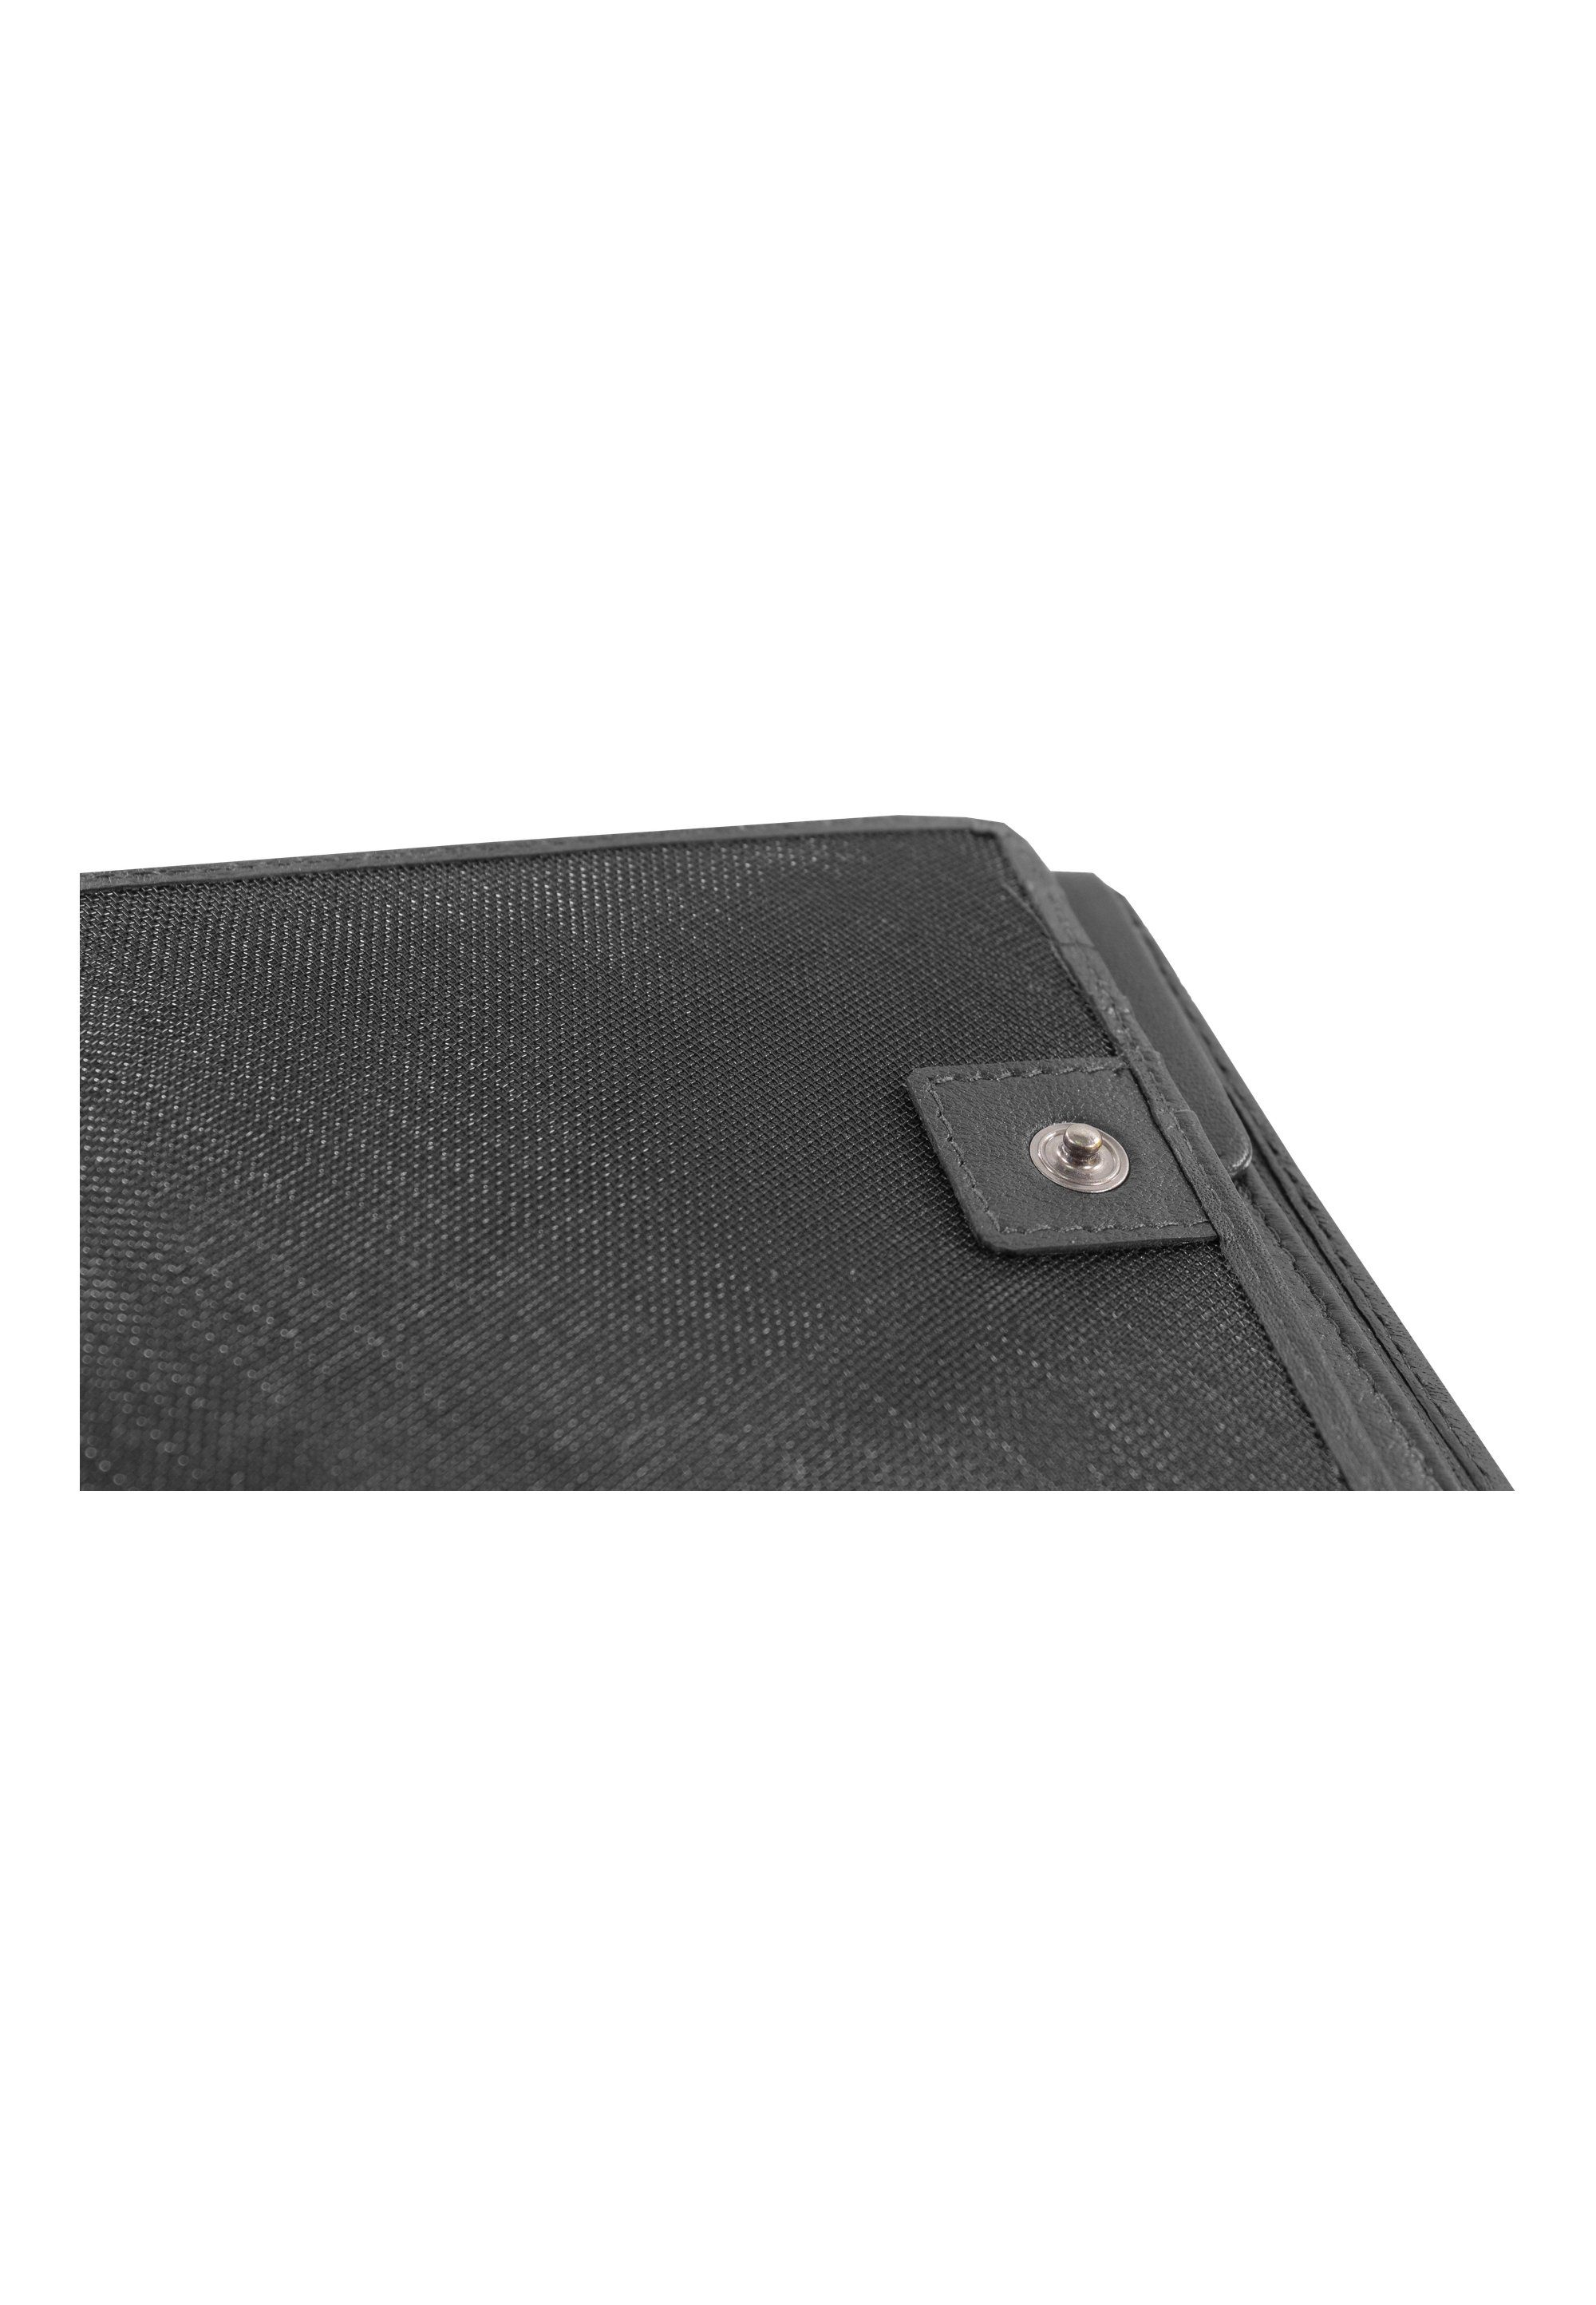 Braun Büffel Brieftasche mit Aufteilung HENRY, schwarz praktischer